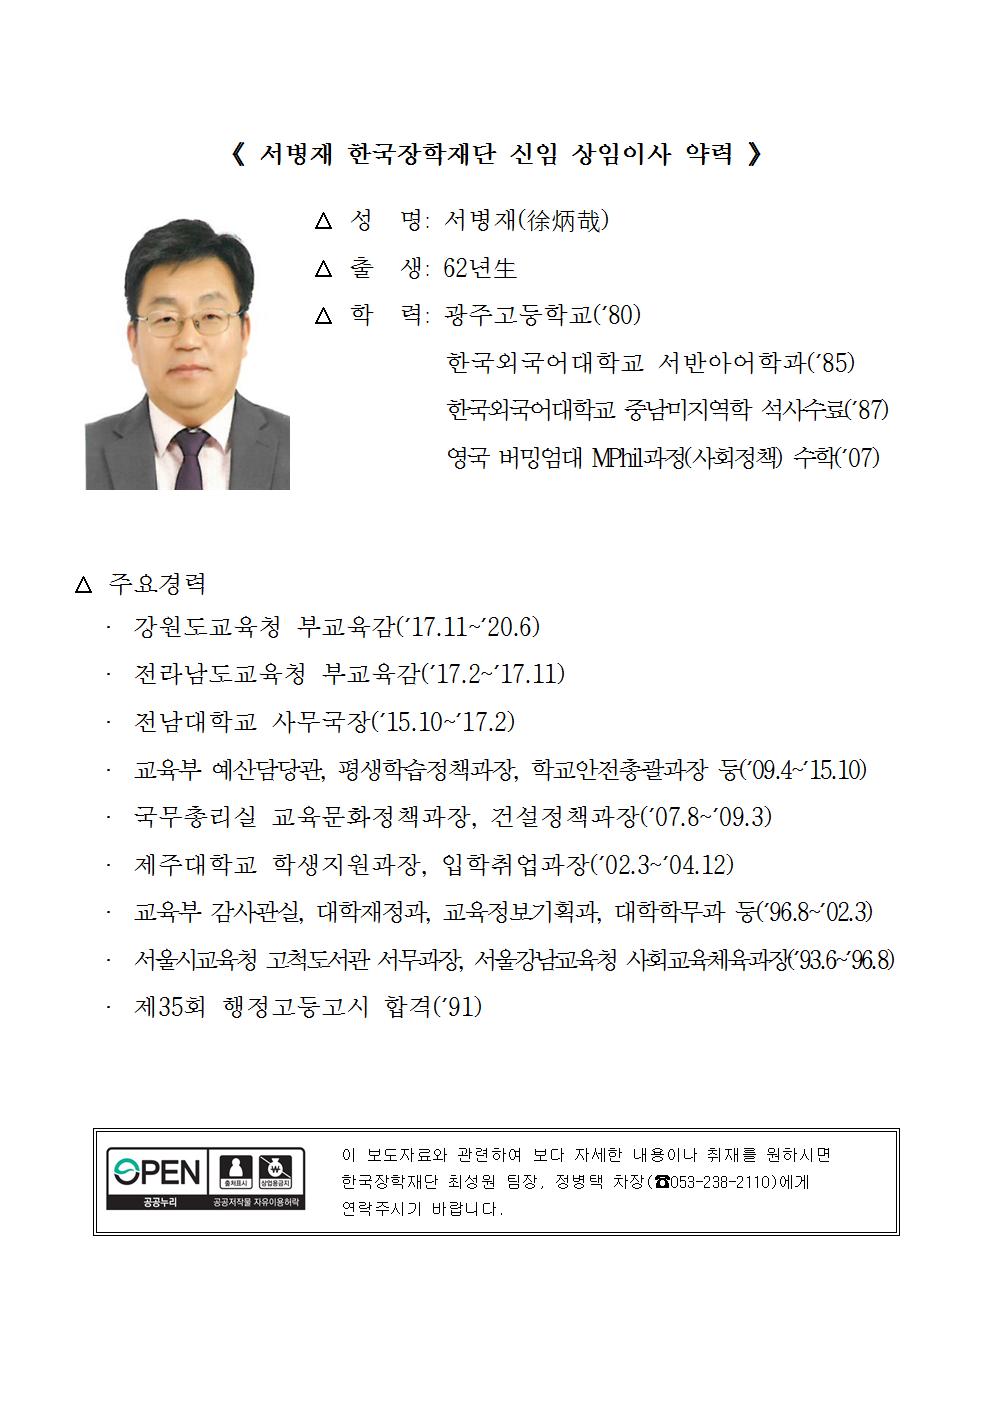 07-13(월)[인사보도자료] 한국장학재단 서병재 상임이사 선임002.jpg